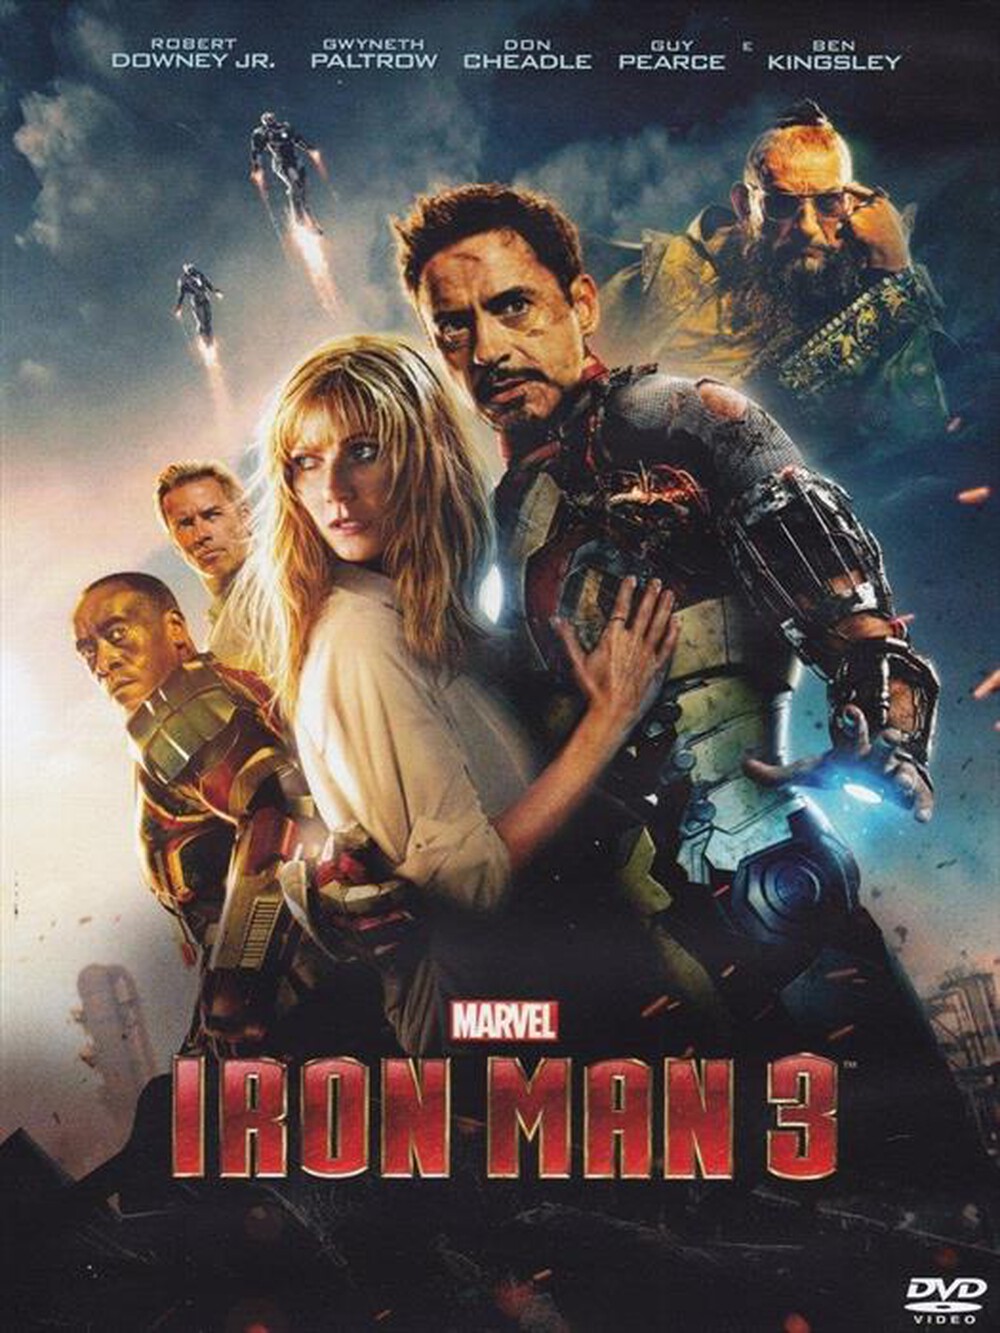 "WALT DISNEY - Iron Man 3"